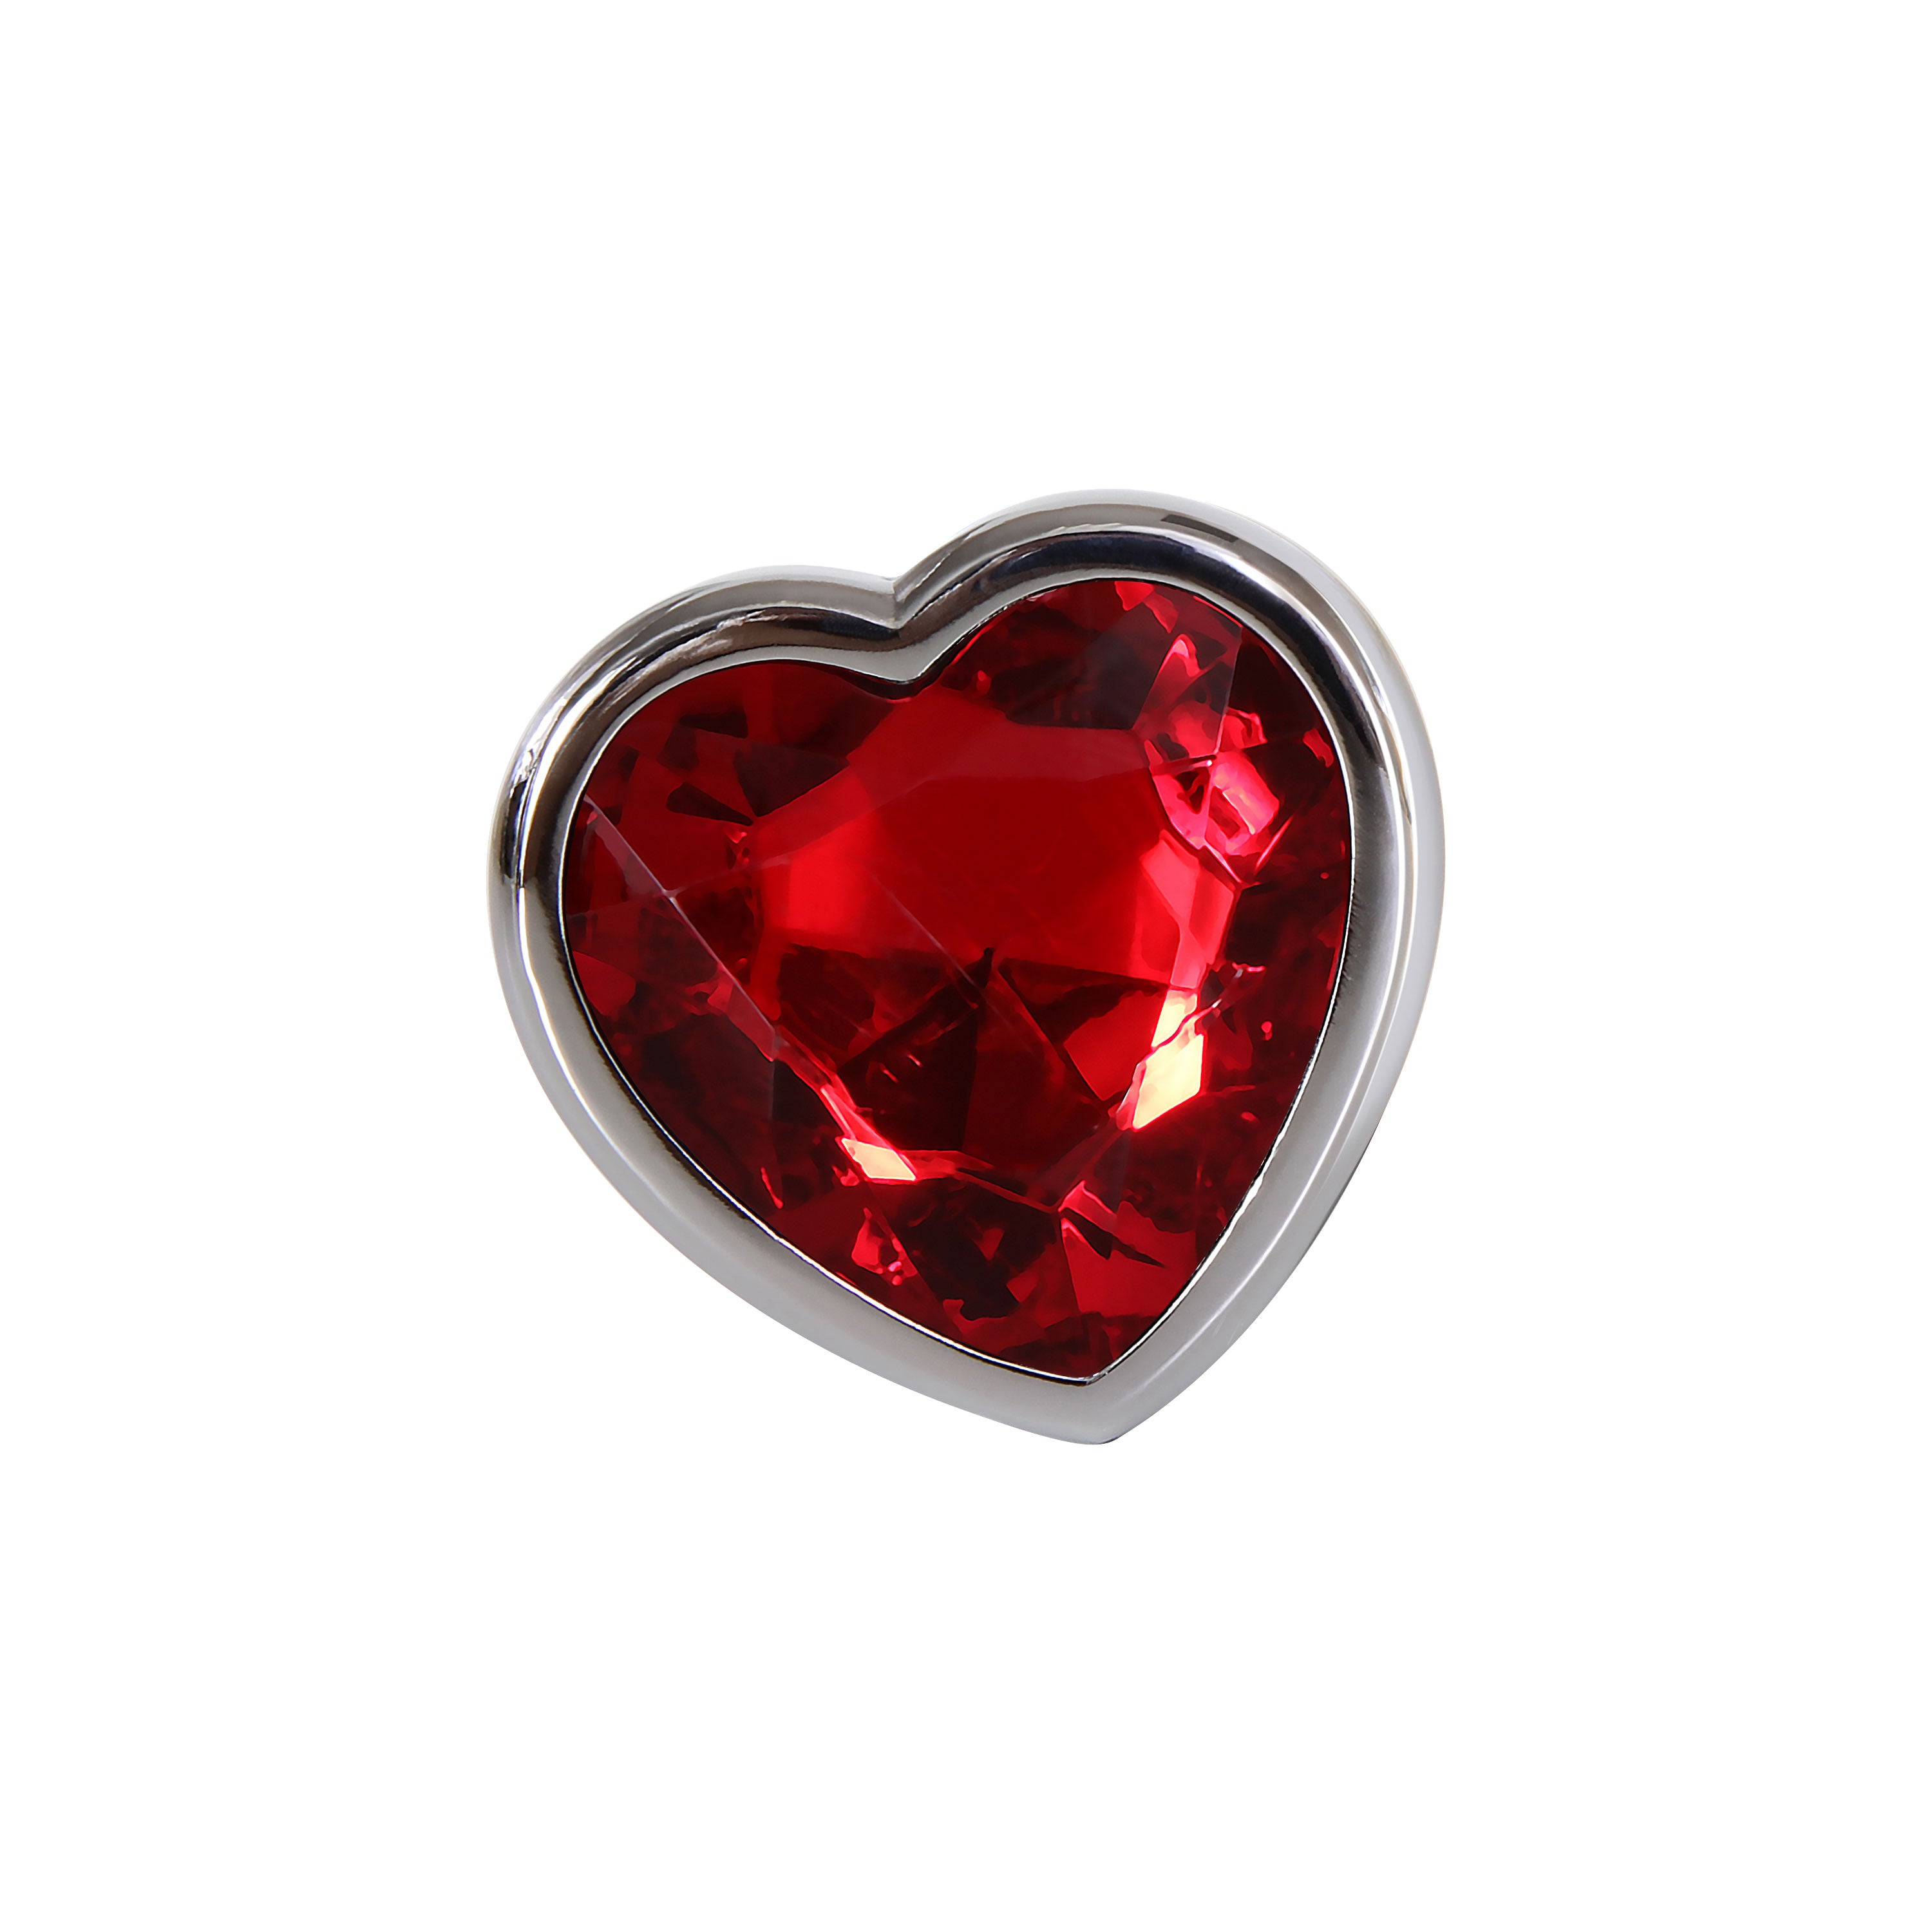 Adam & Eve Red Heart Gen butt Plug - Small - Metallic 7.1 cm